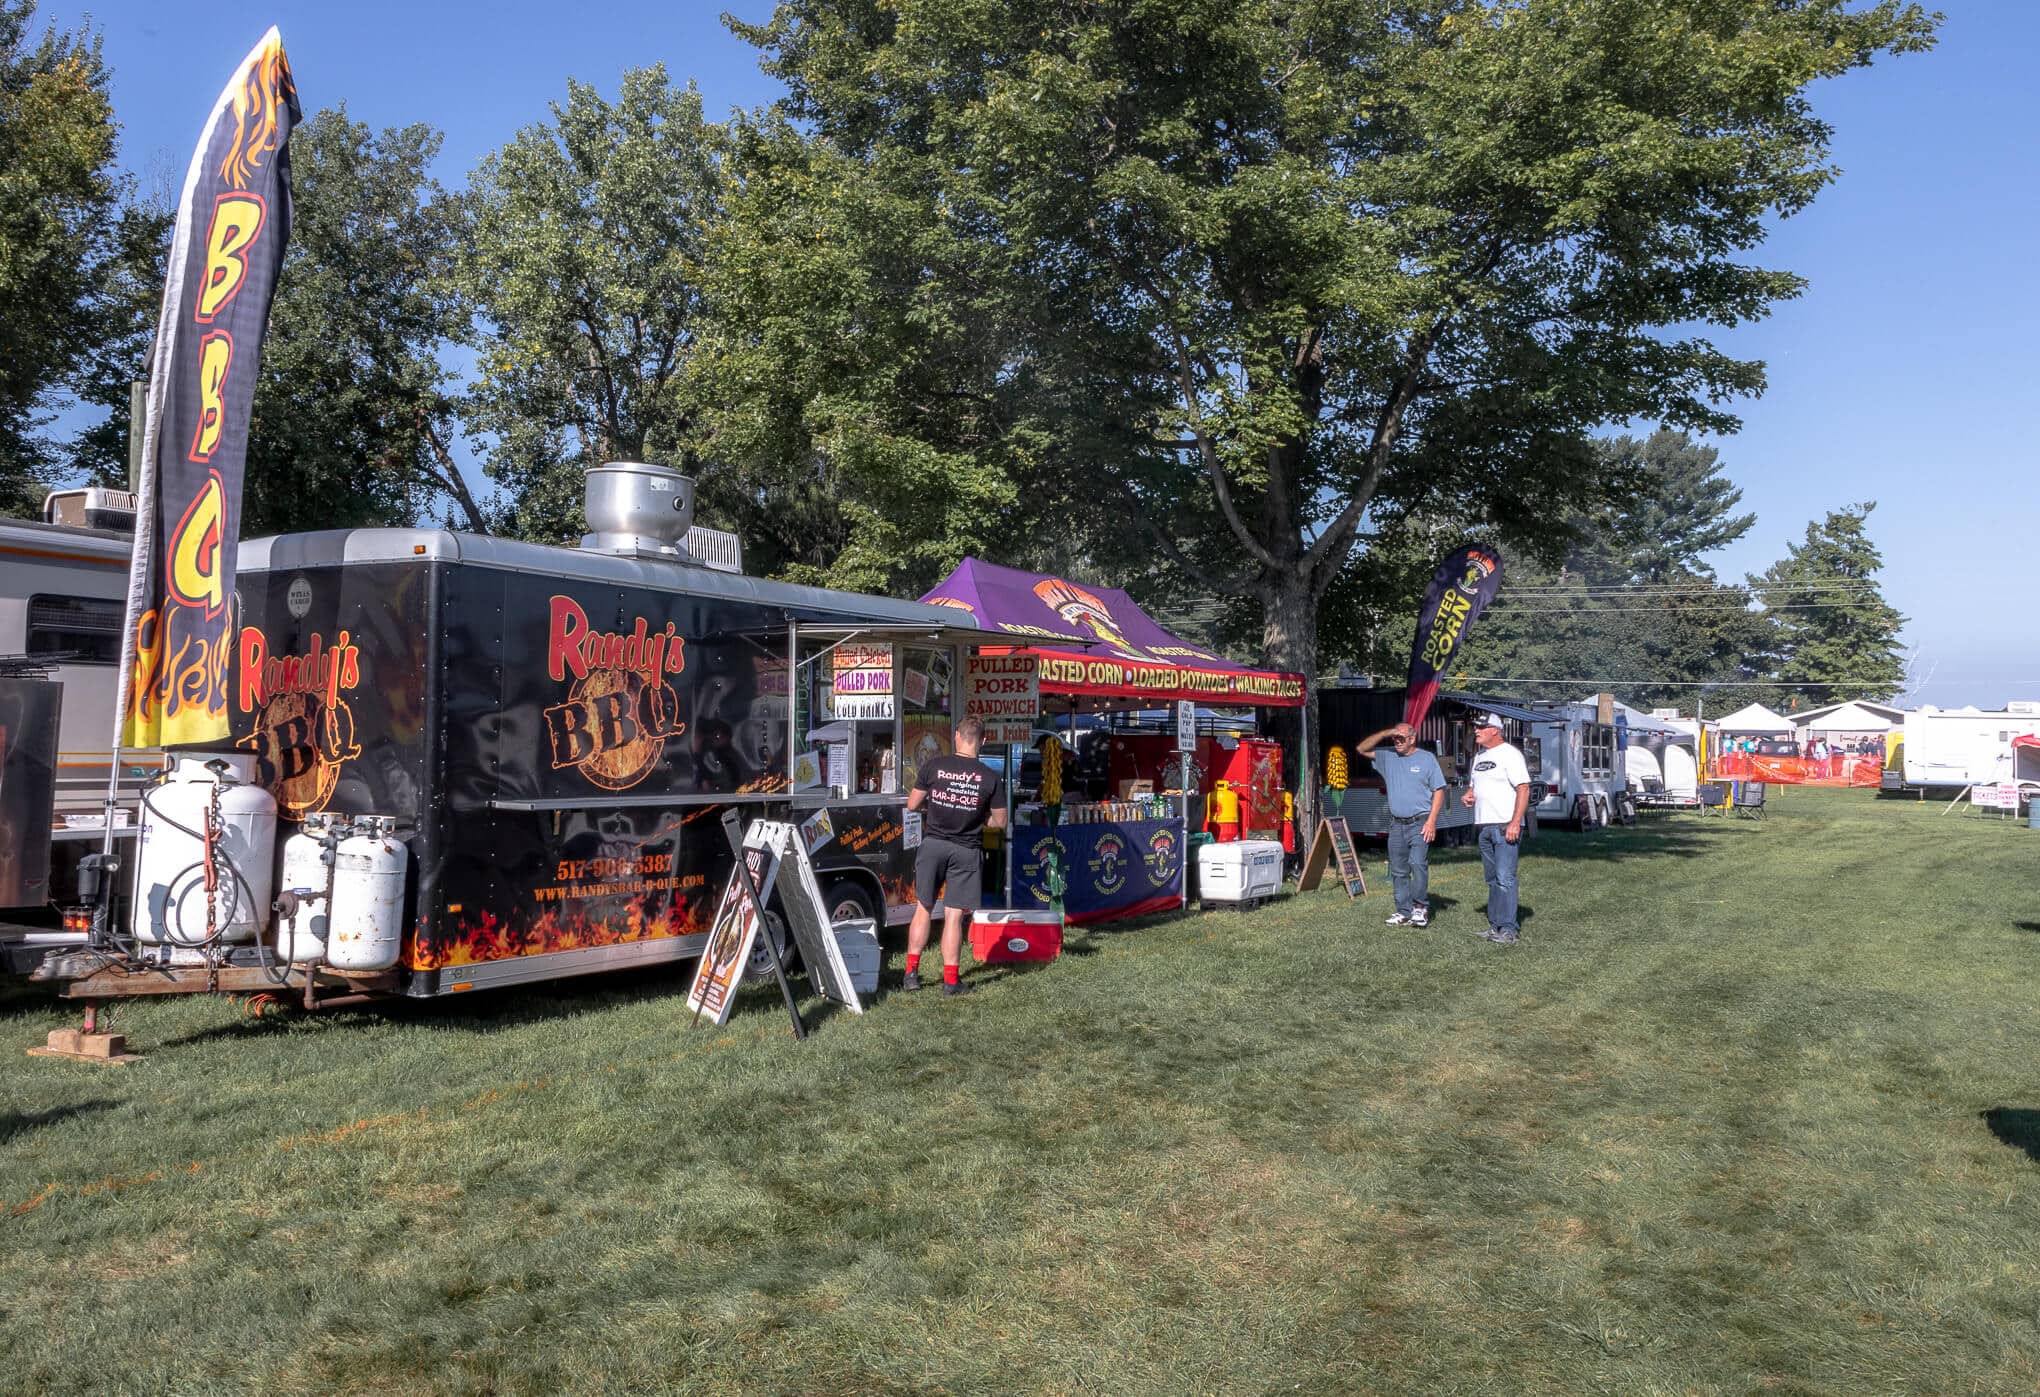 Food trucks at the BBQ festival